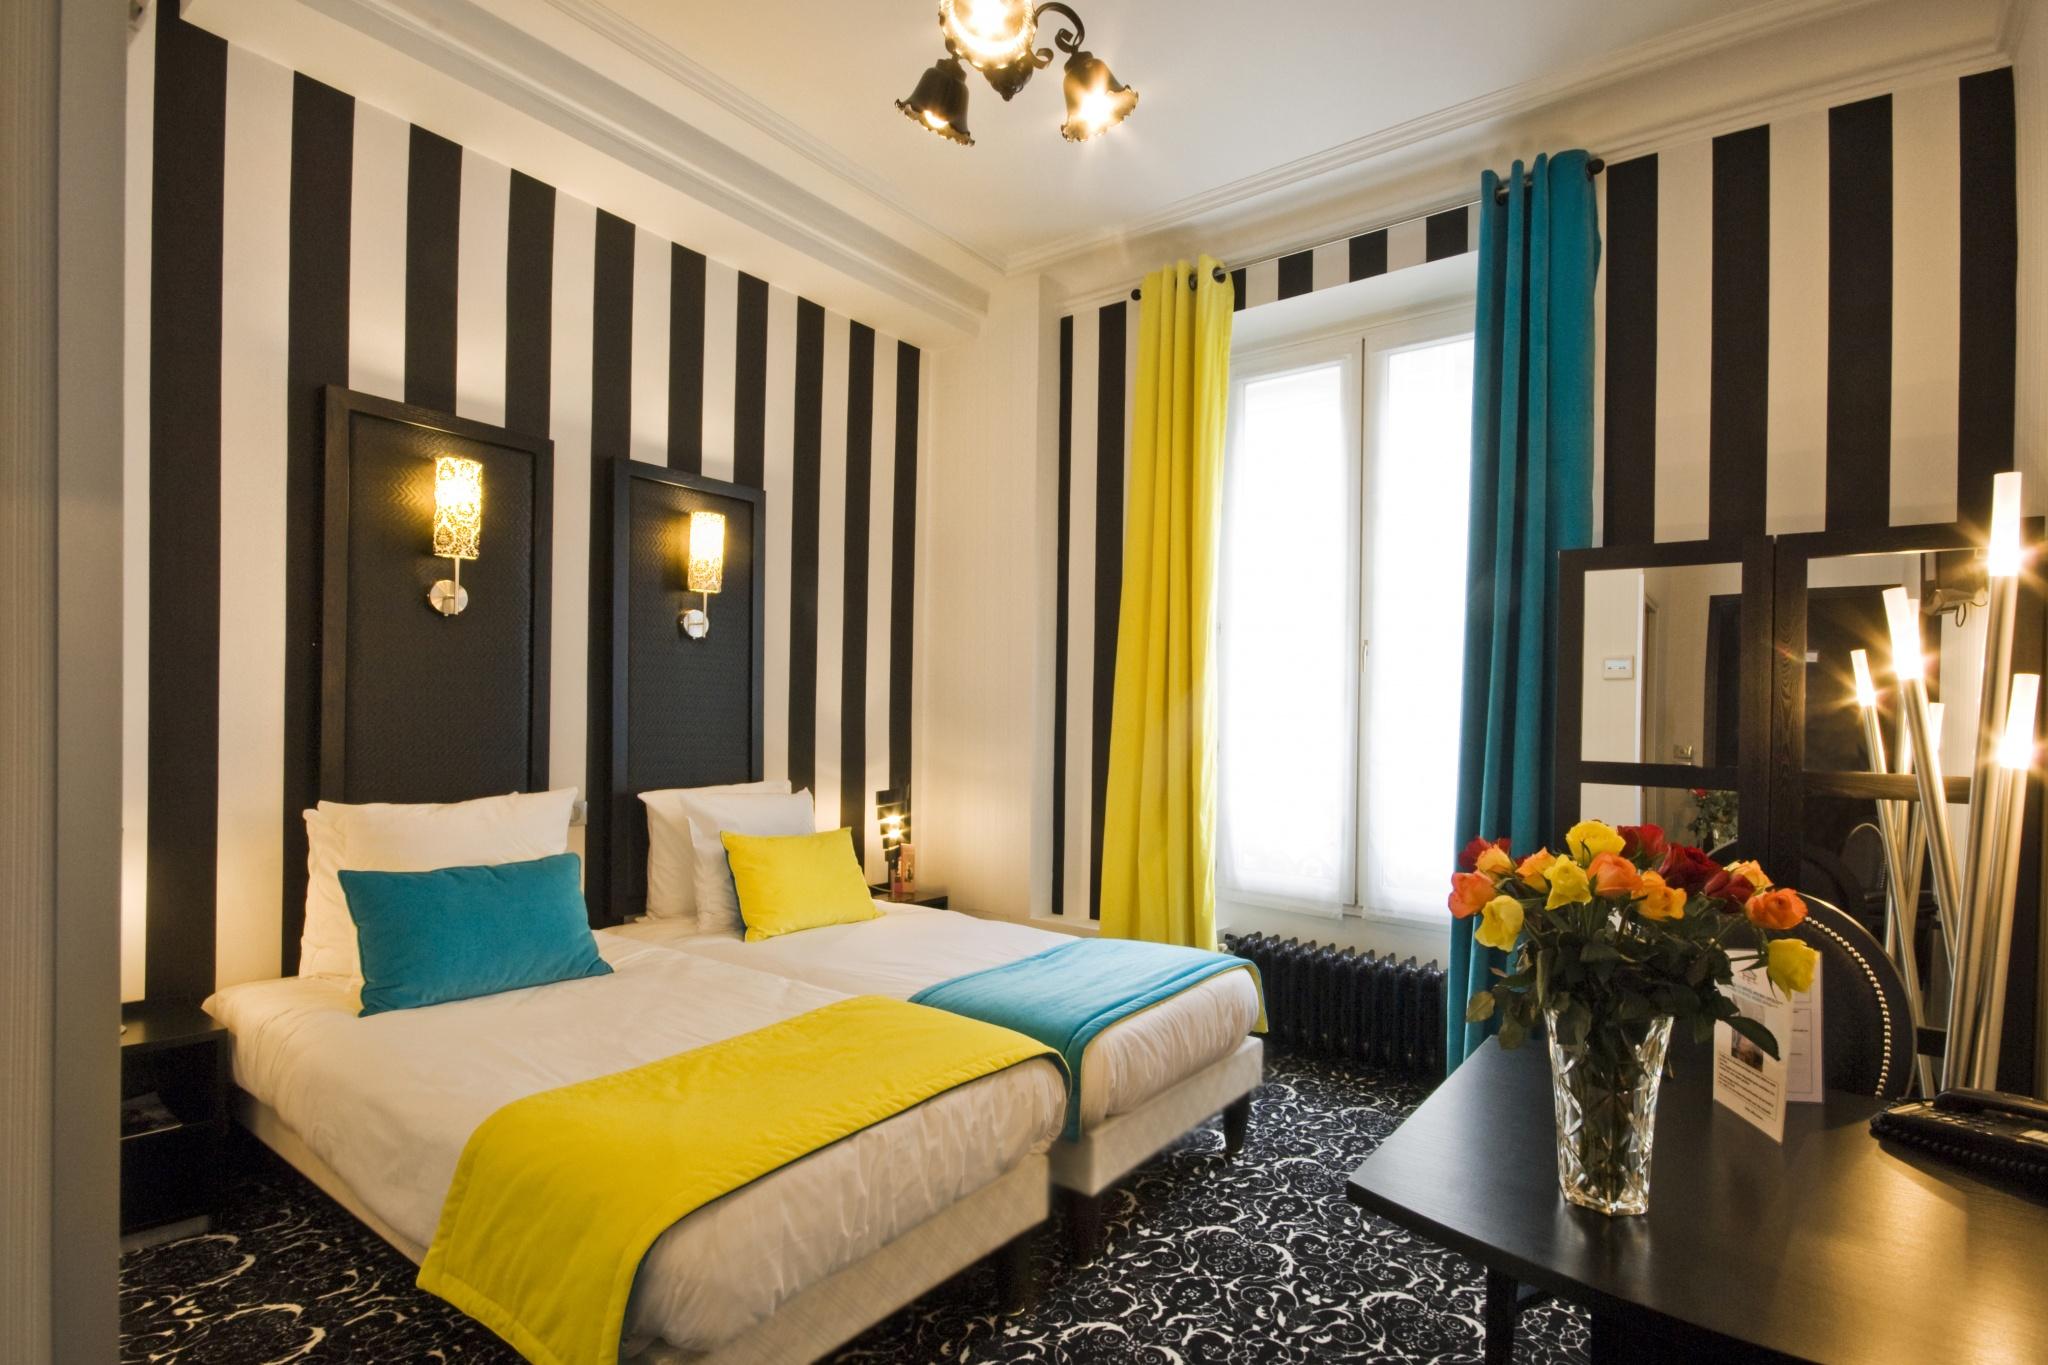 Hôtel Peyris Opéra | Paris | Enjoy our comfy rooms